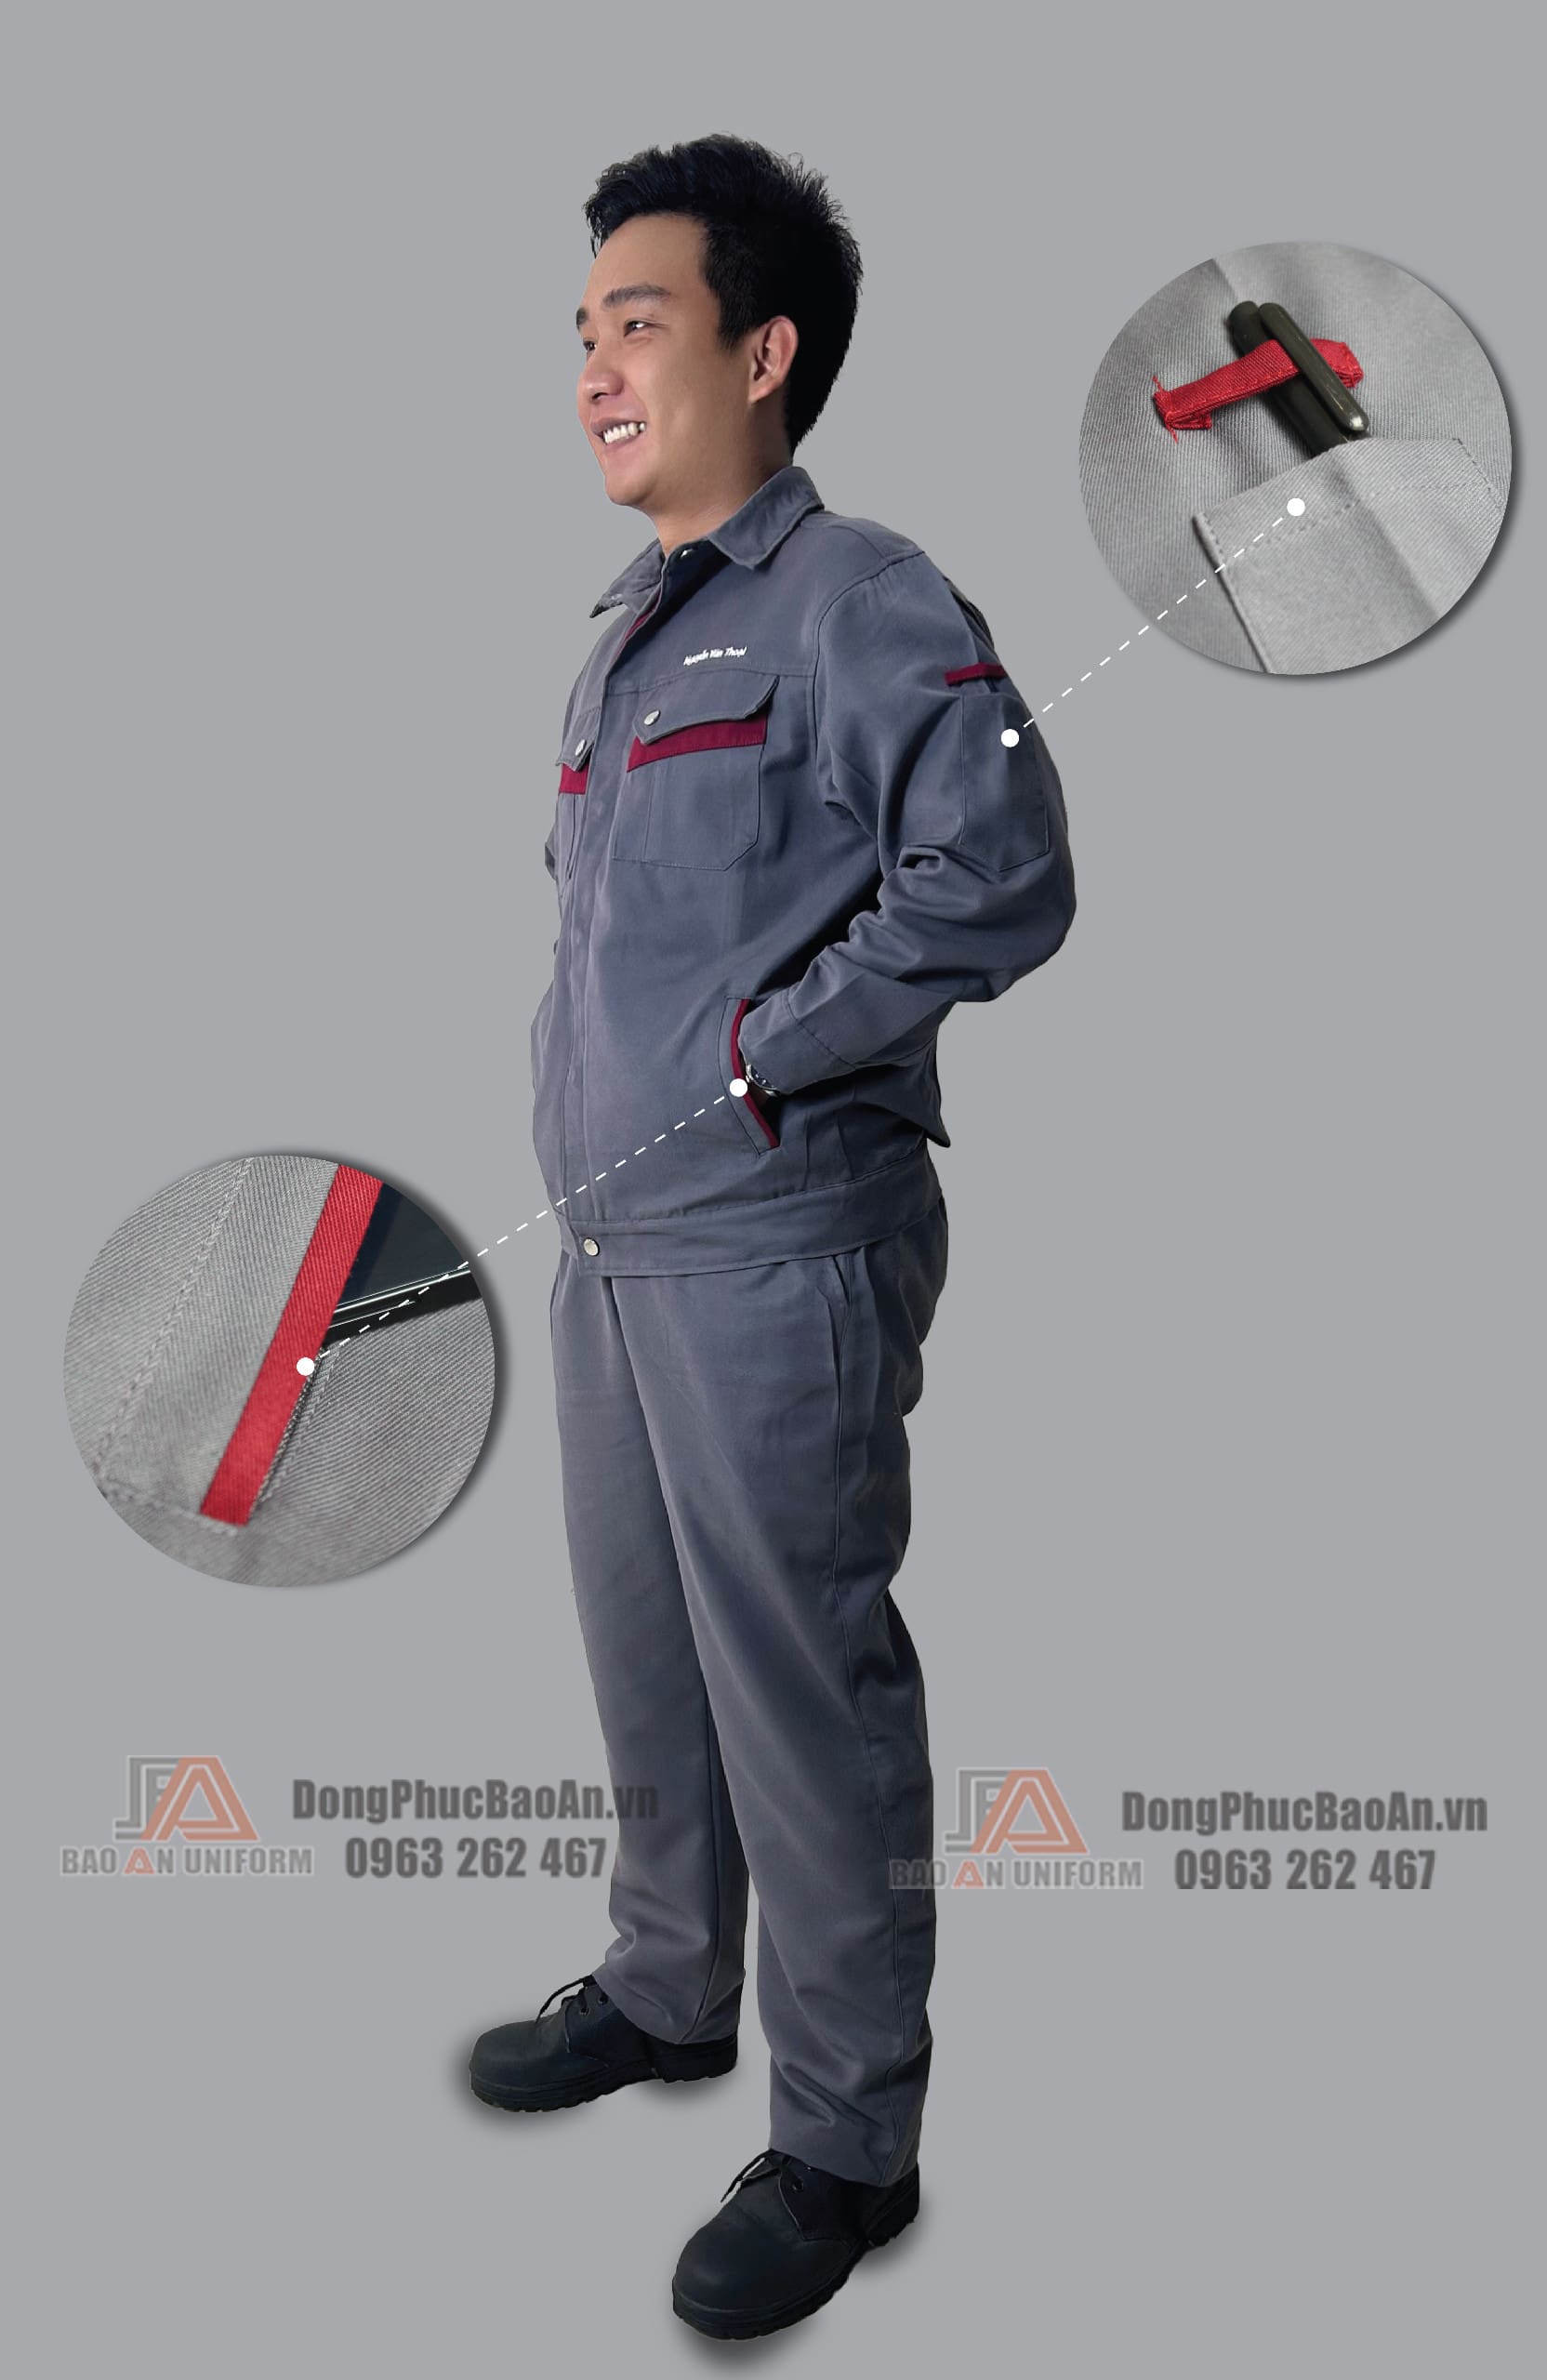 Thiết kế chi tiết cho đồng phục bảo hộ lao động